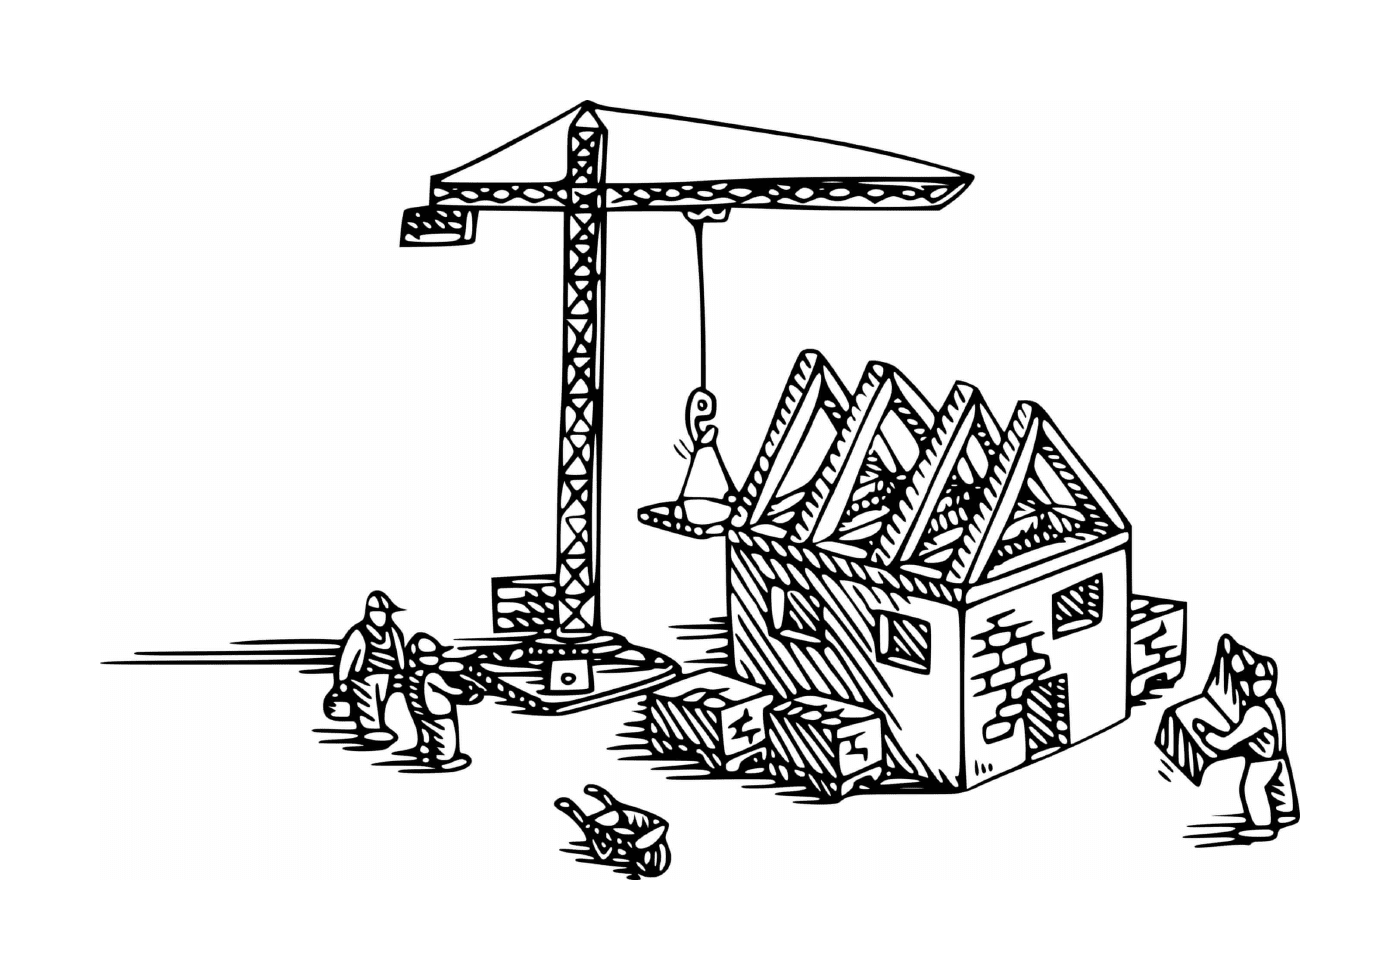  Baukran verwendet, um ein Haus zu bauen 